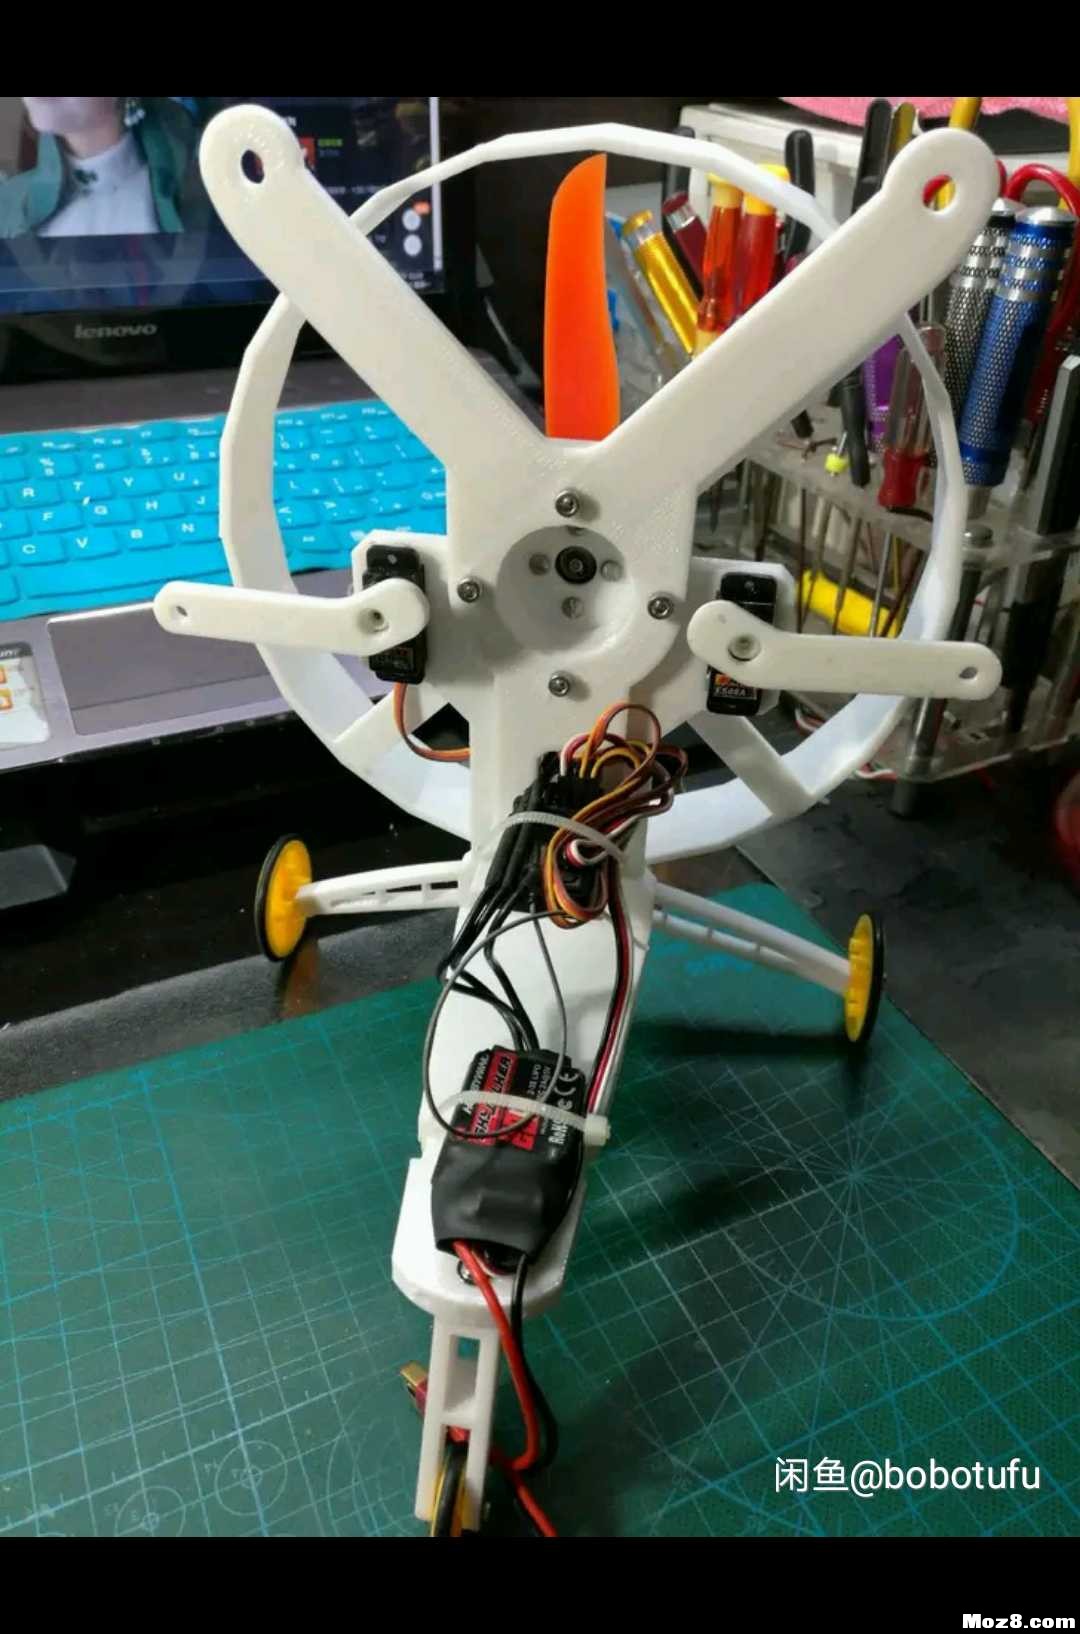 遥控动力伞 3D机架重画 模型,固定翼,舵机,电调,电机 作者:bobotufu 2033 